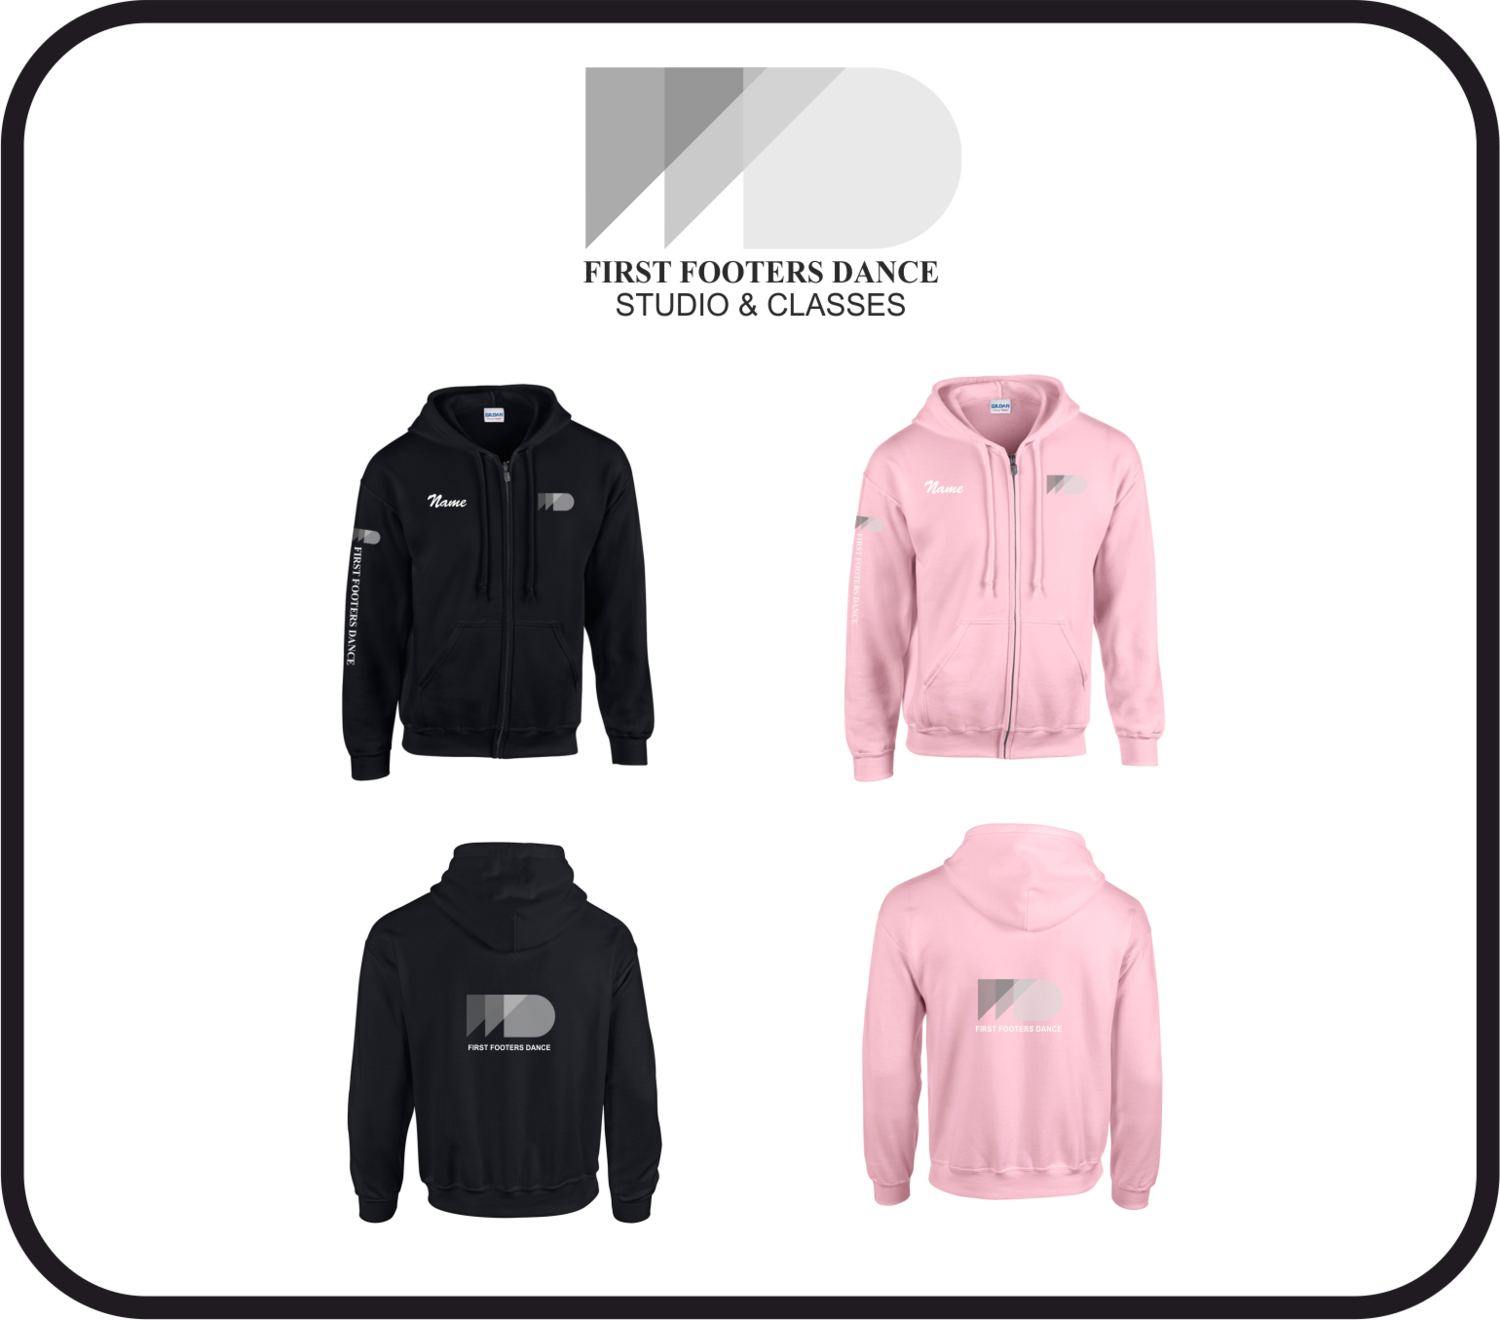 Black or Light Pink Jacket